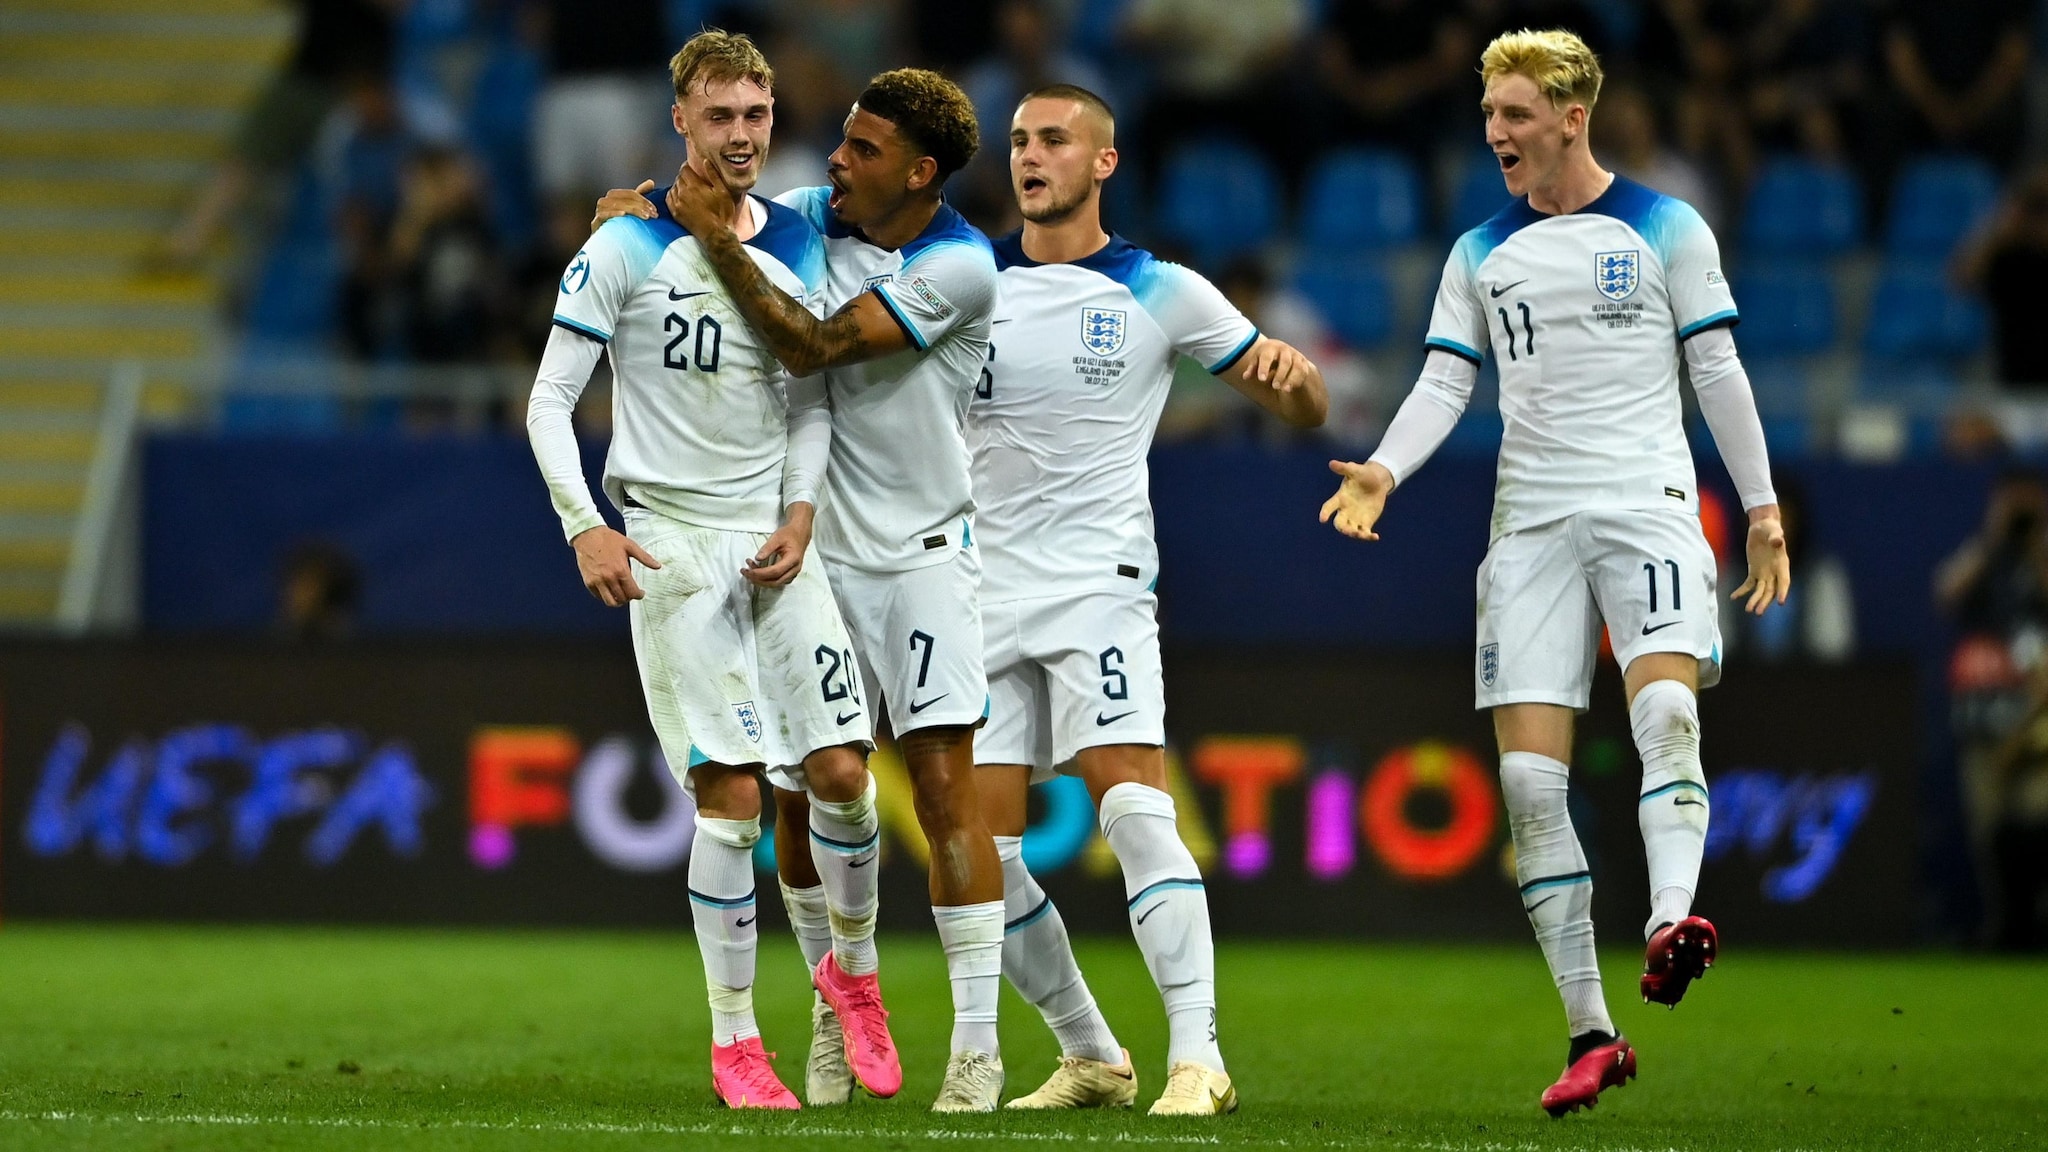 Inglaterra: Do título na Euro Sub-17 à glória no Mundial Sub-20